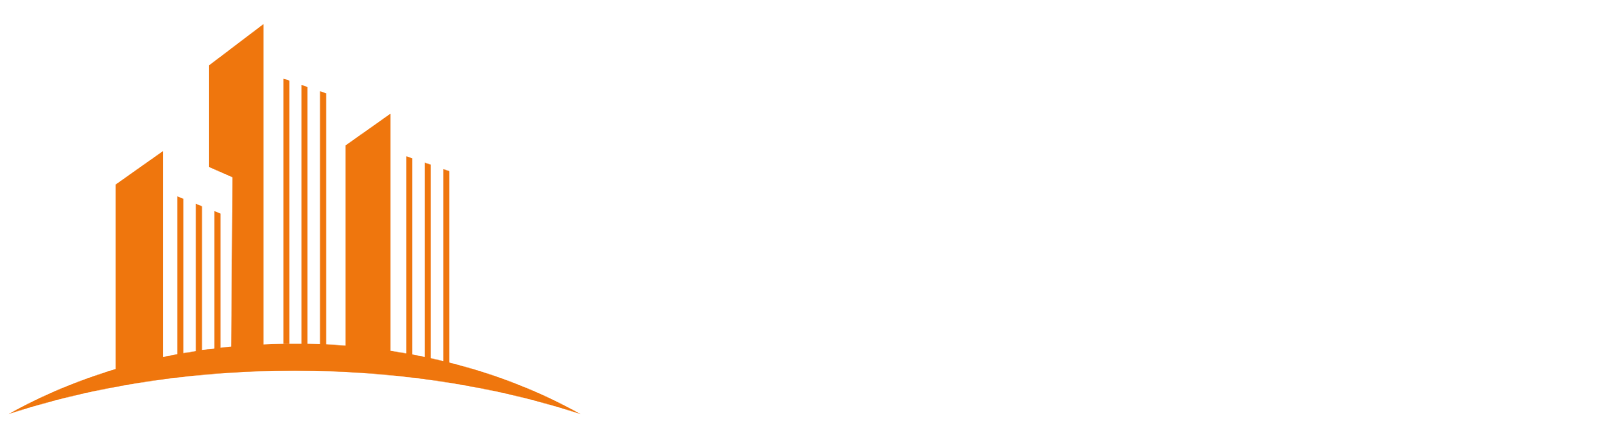 Logo sito della Associazione degli uffici flessibili e coworking